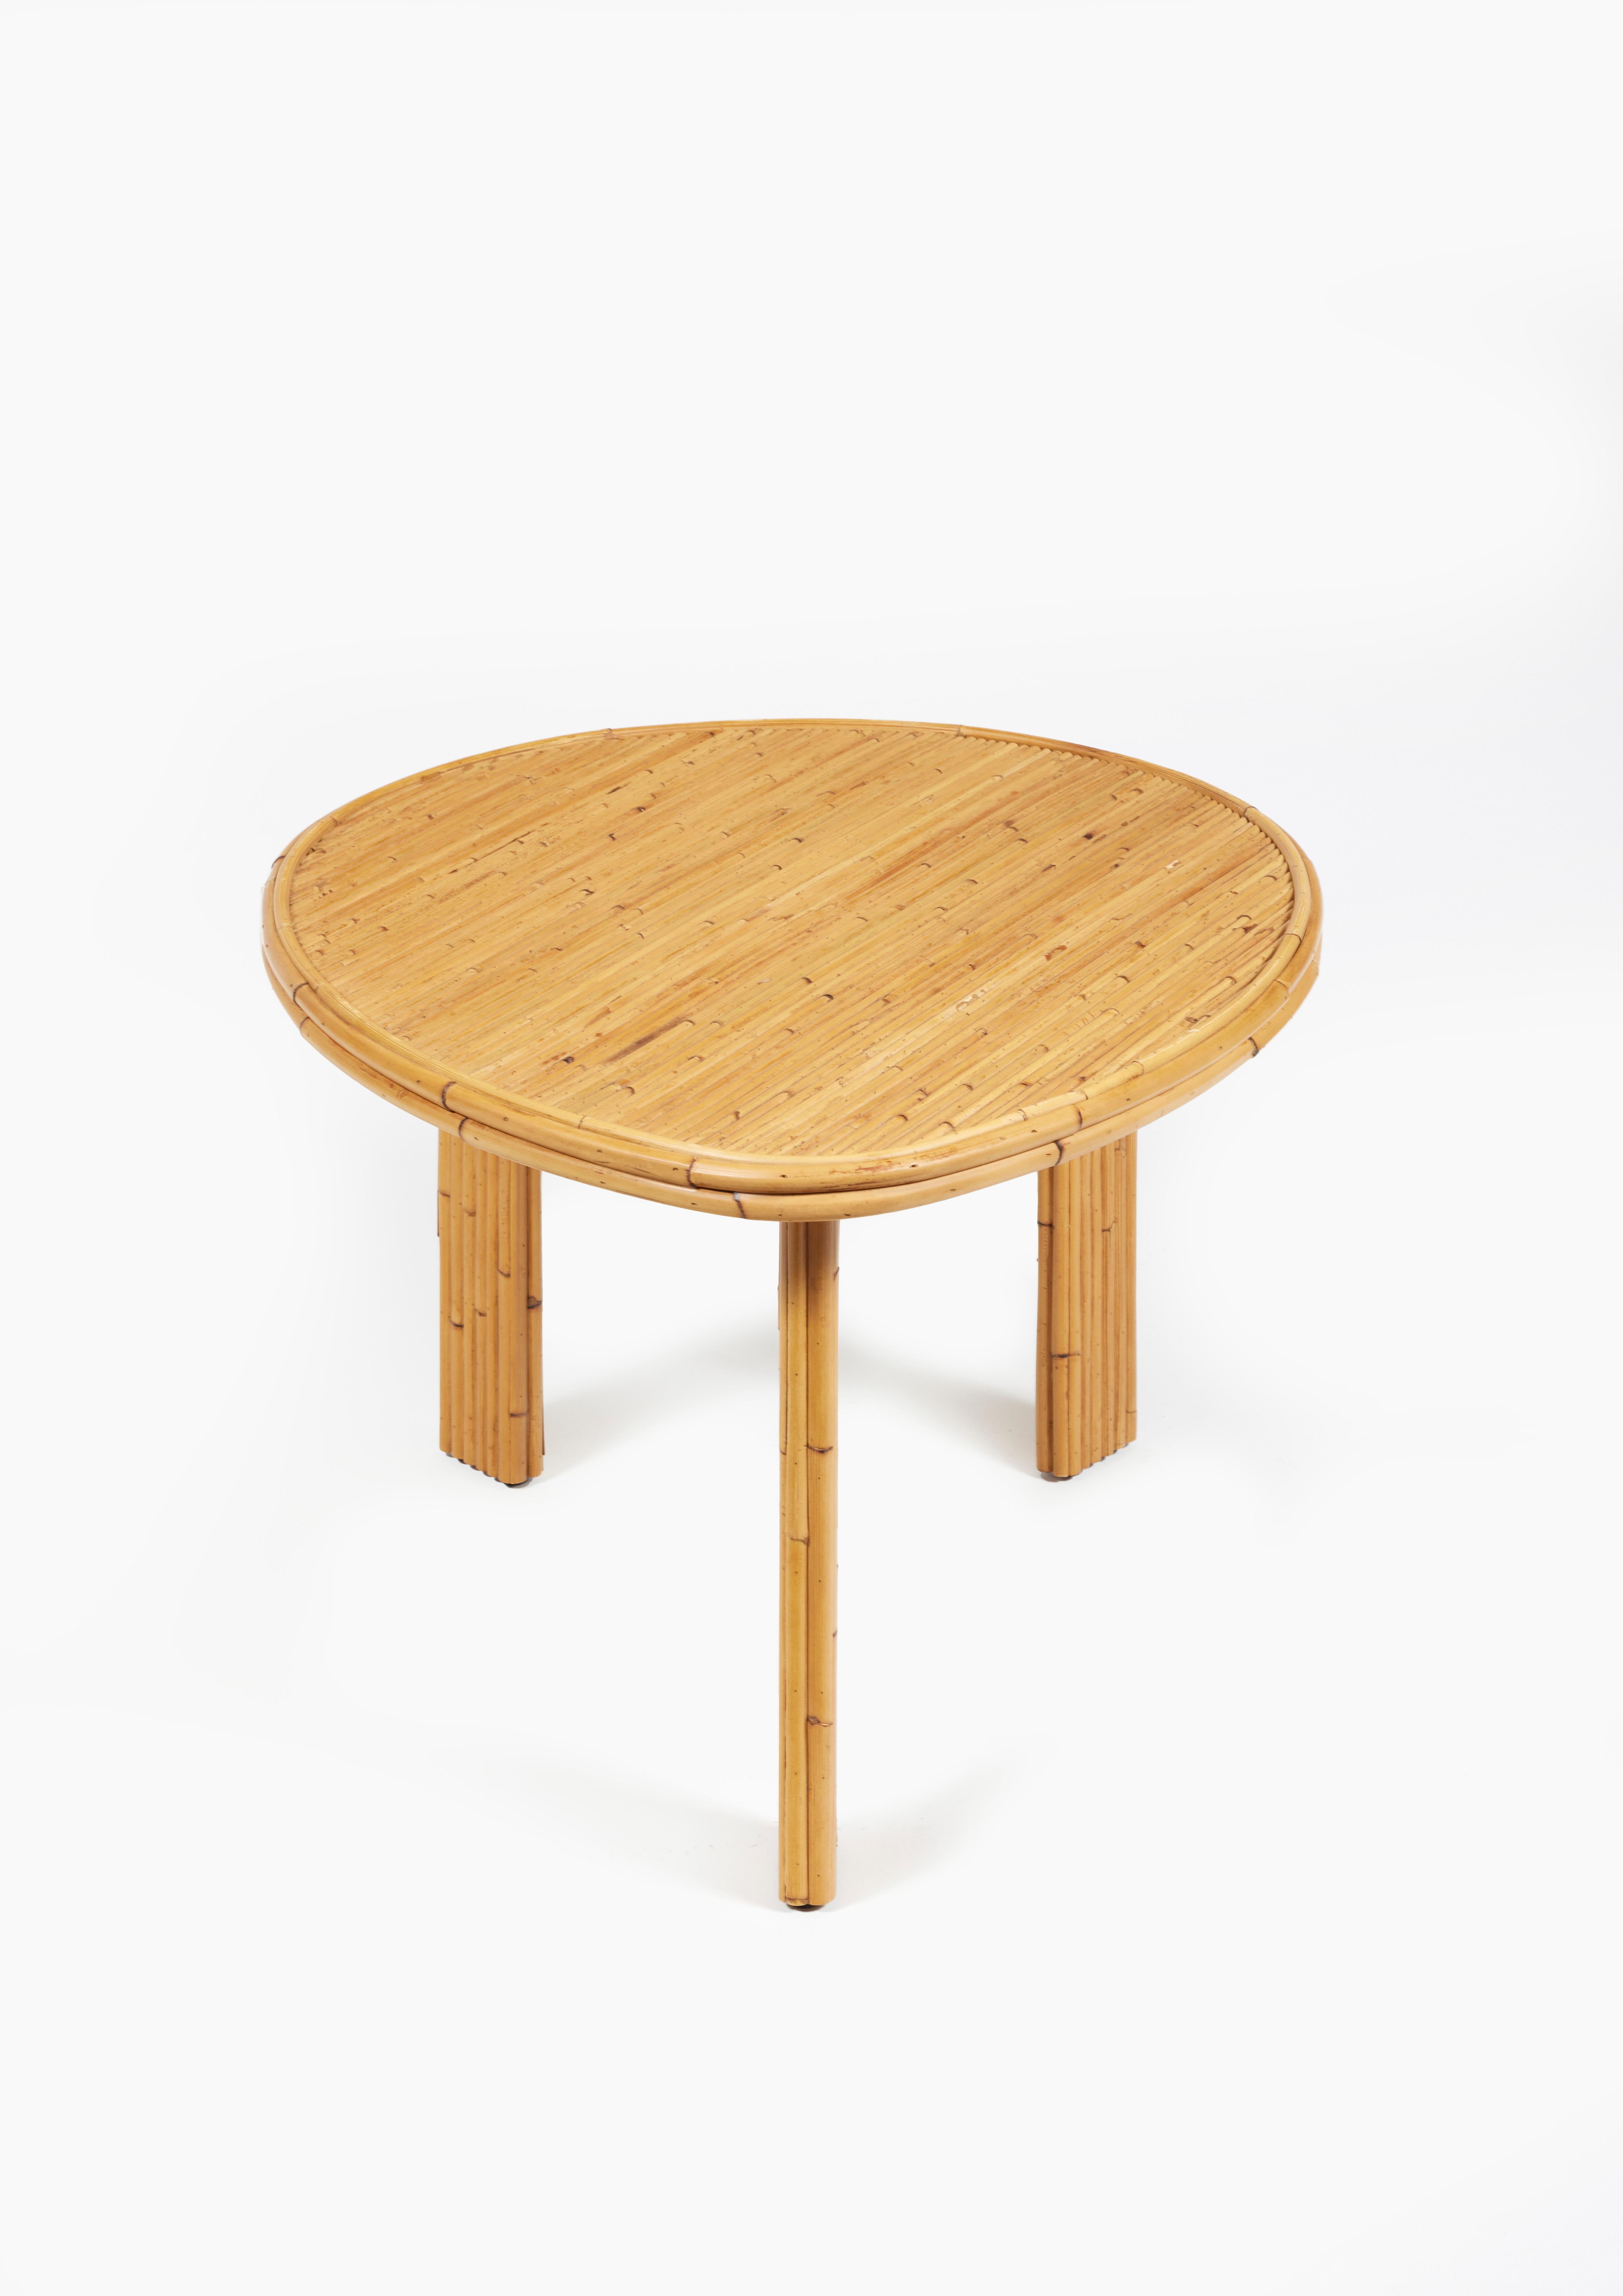 Couchtisch aus natürlichem Rattanstrang.

Dieser niedrige Tisch kann in anderen Größen, Ausführungen und Farben angepasst werden.